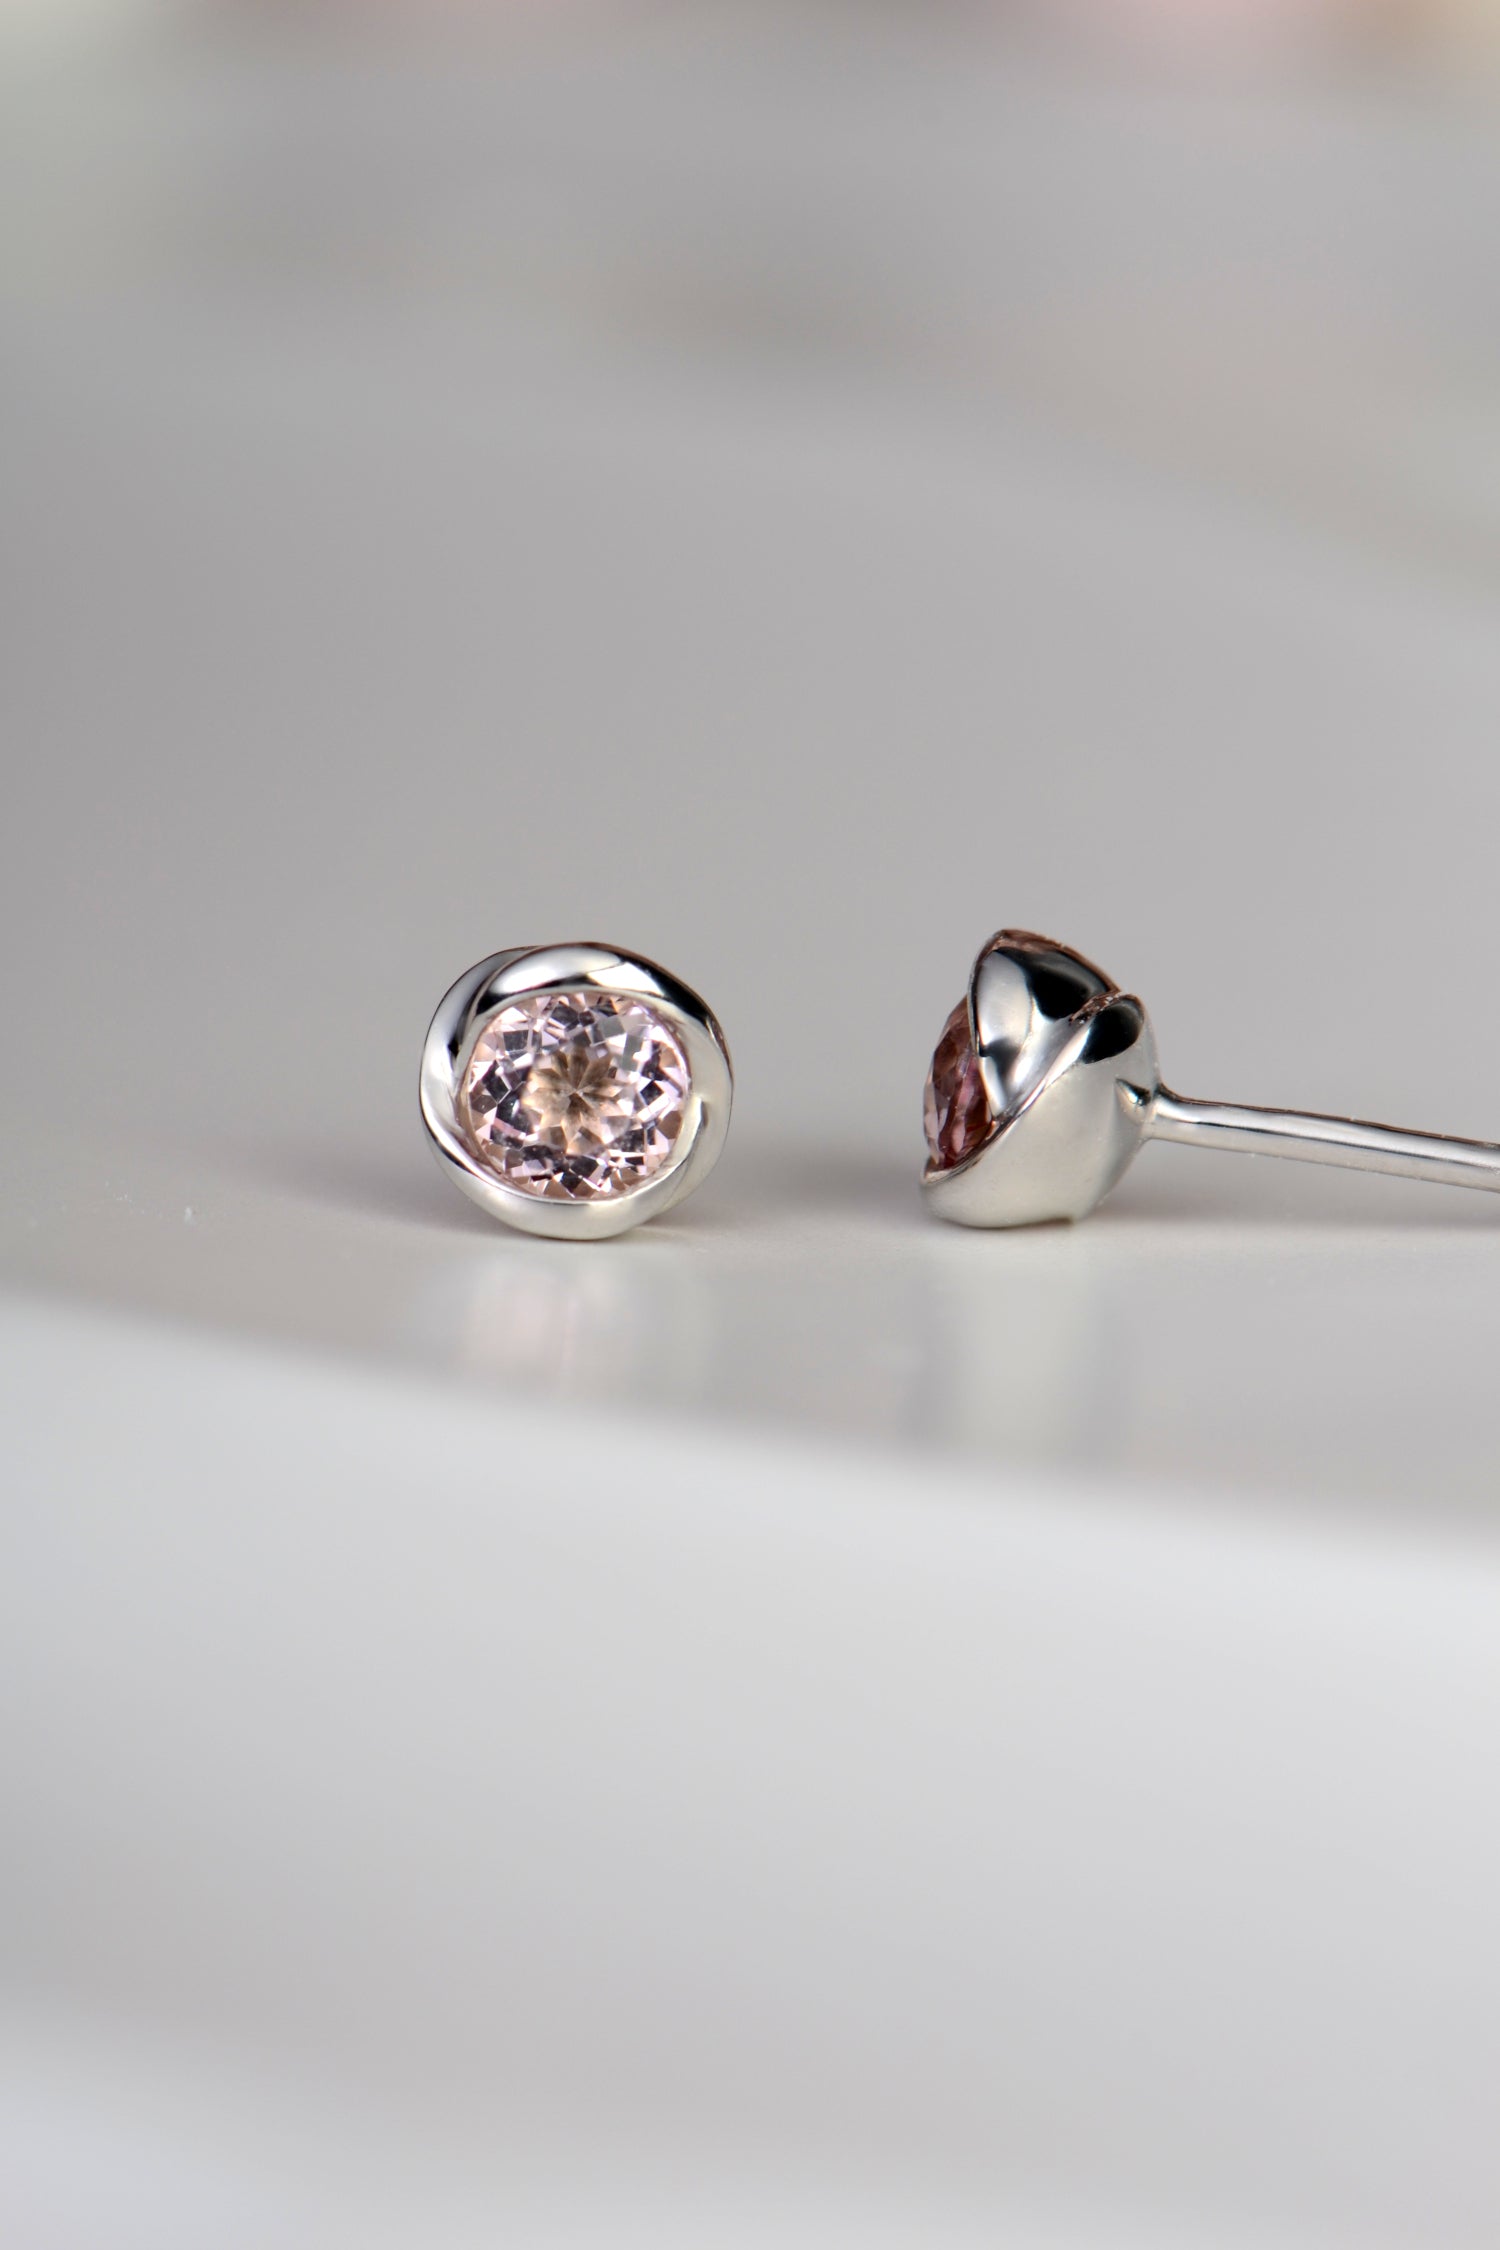 petite morganite earrings in a rosebud design